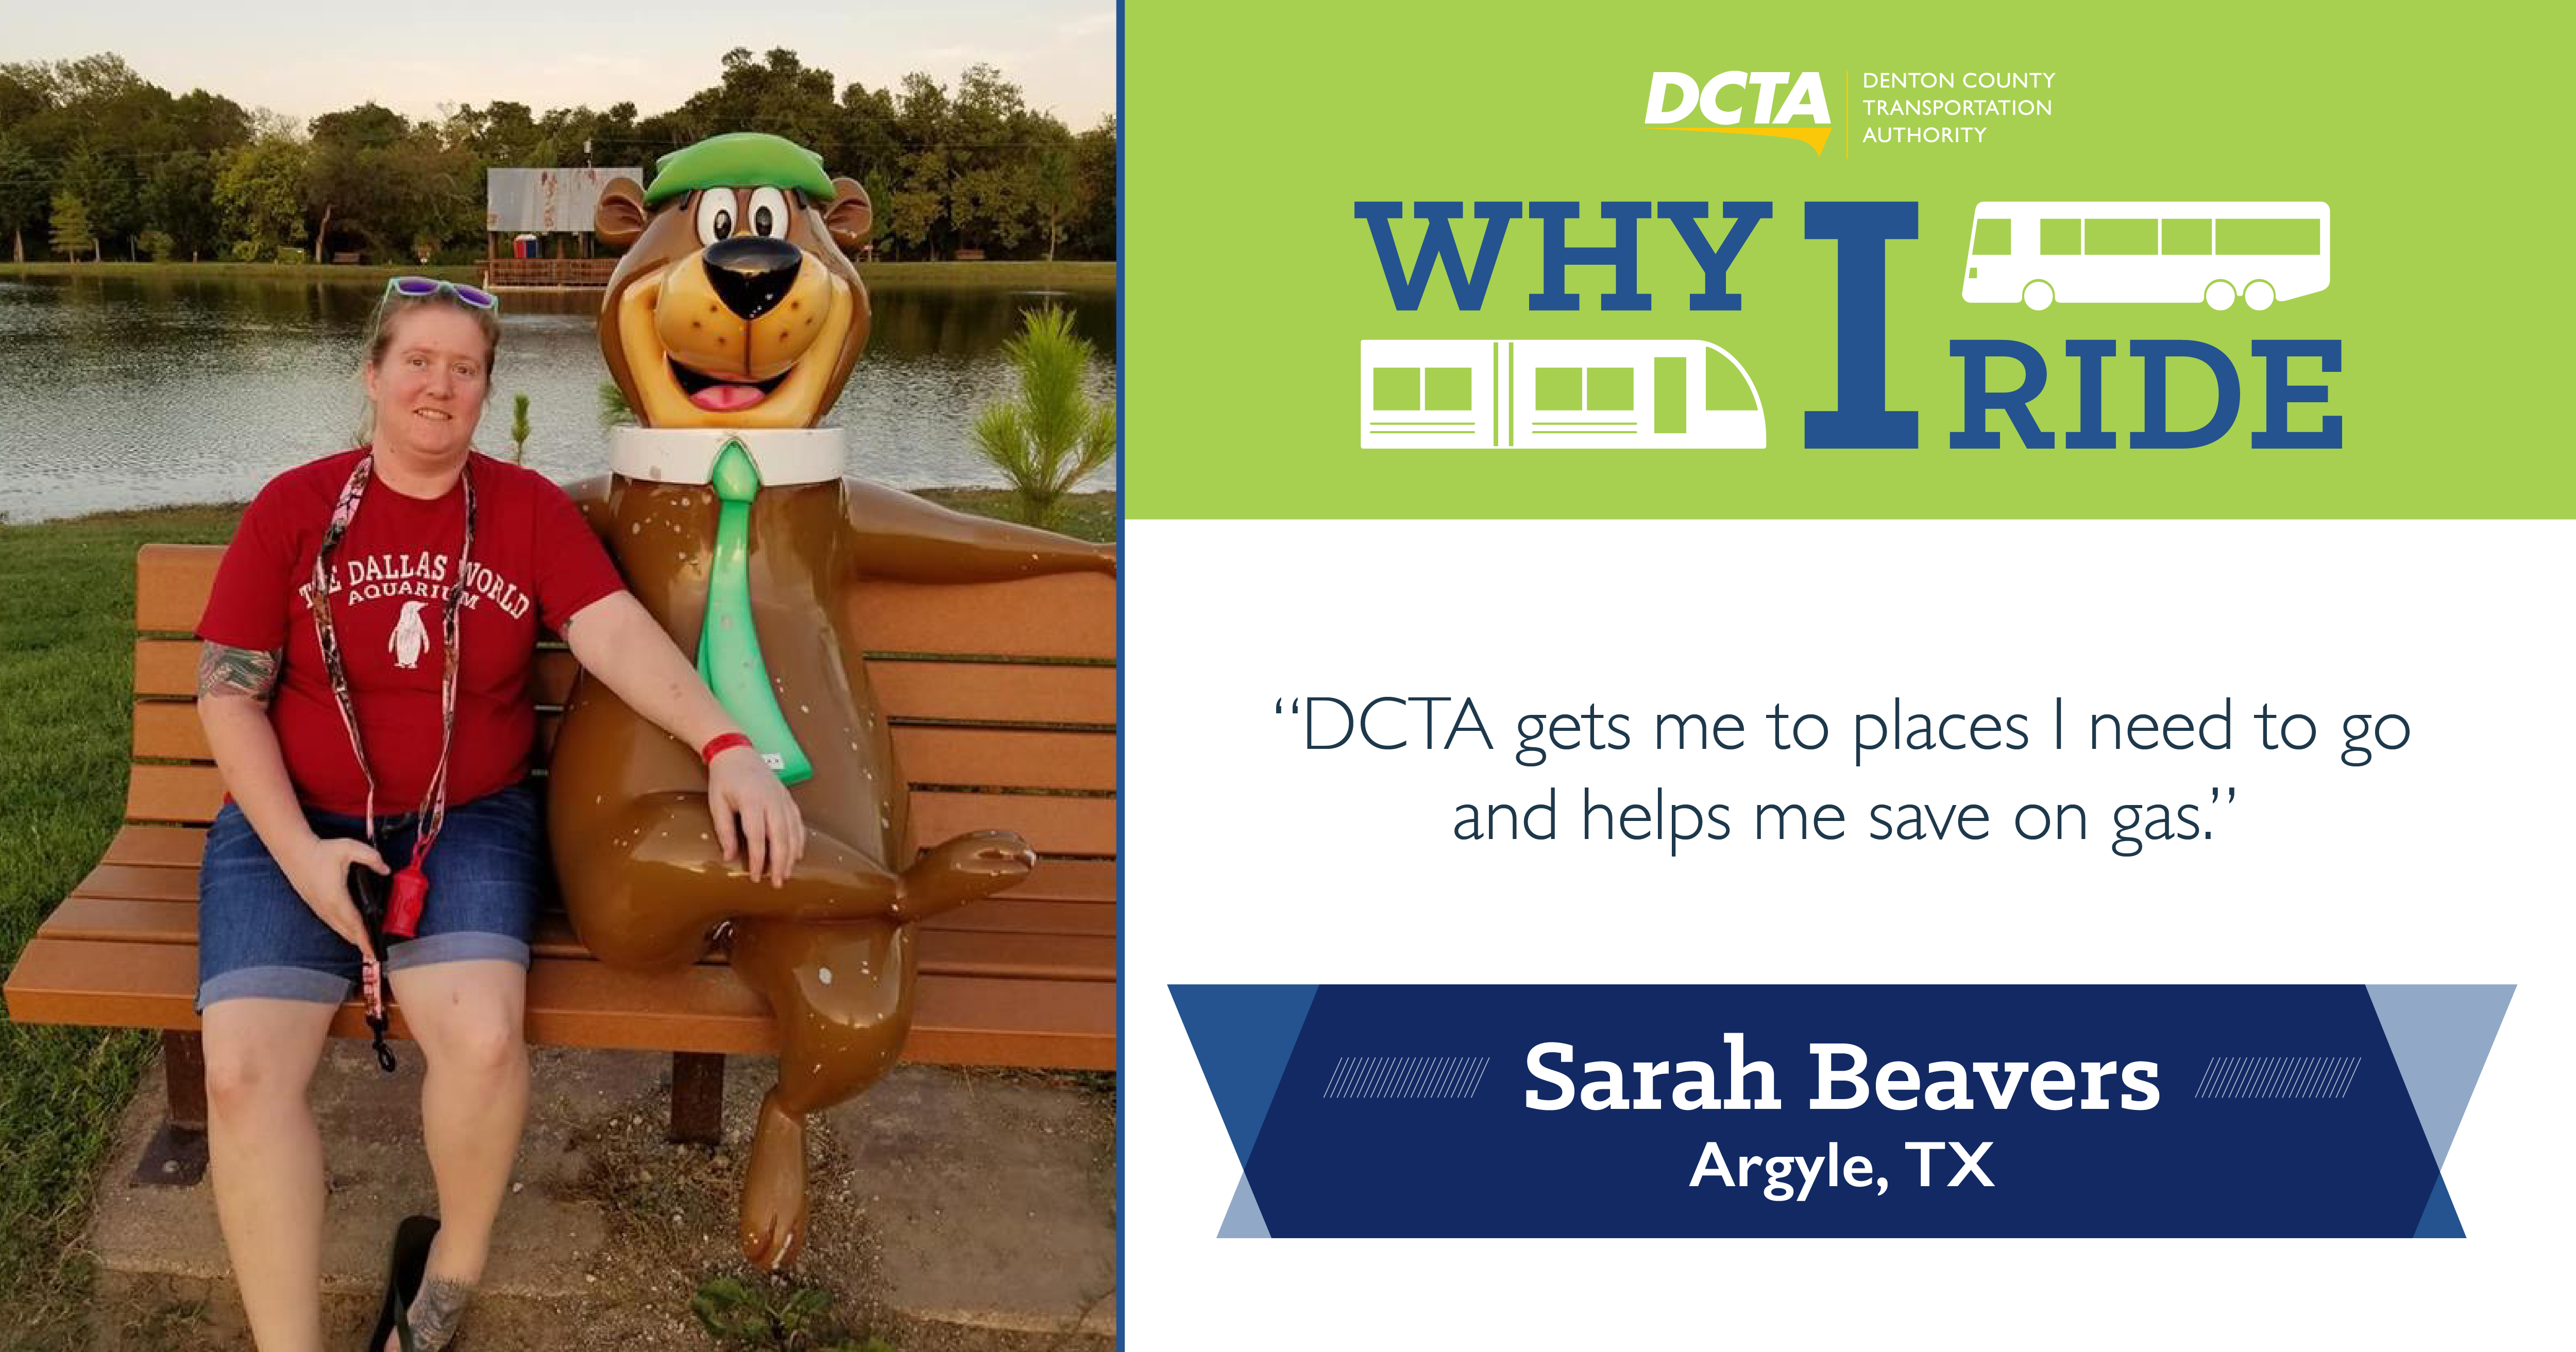 #WhyIRideDCTA: Sarah Beavers